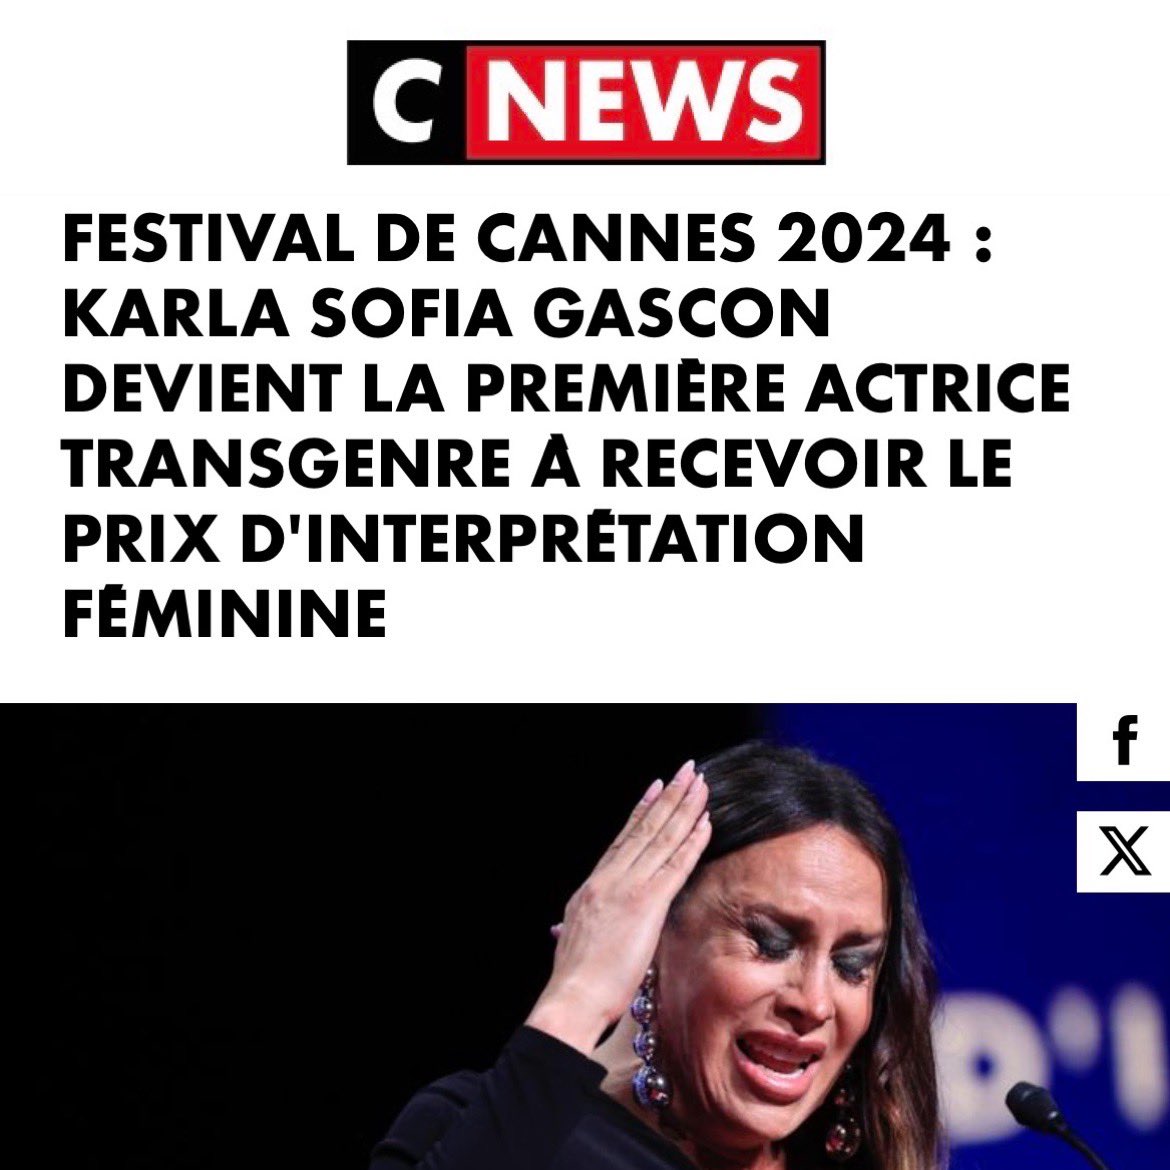 C’est donc un homme qui reçoit à Cannes le prix d’interprétation… féminine. 
Le progrès pour la gauche, c’est l’effacement des femmes et des mères. #Cannes2024